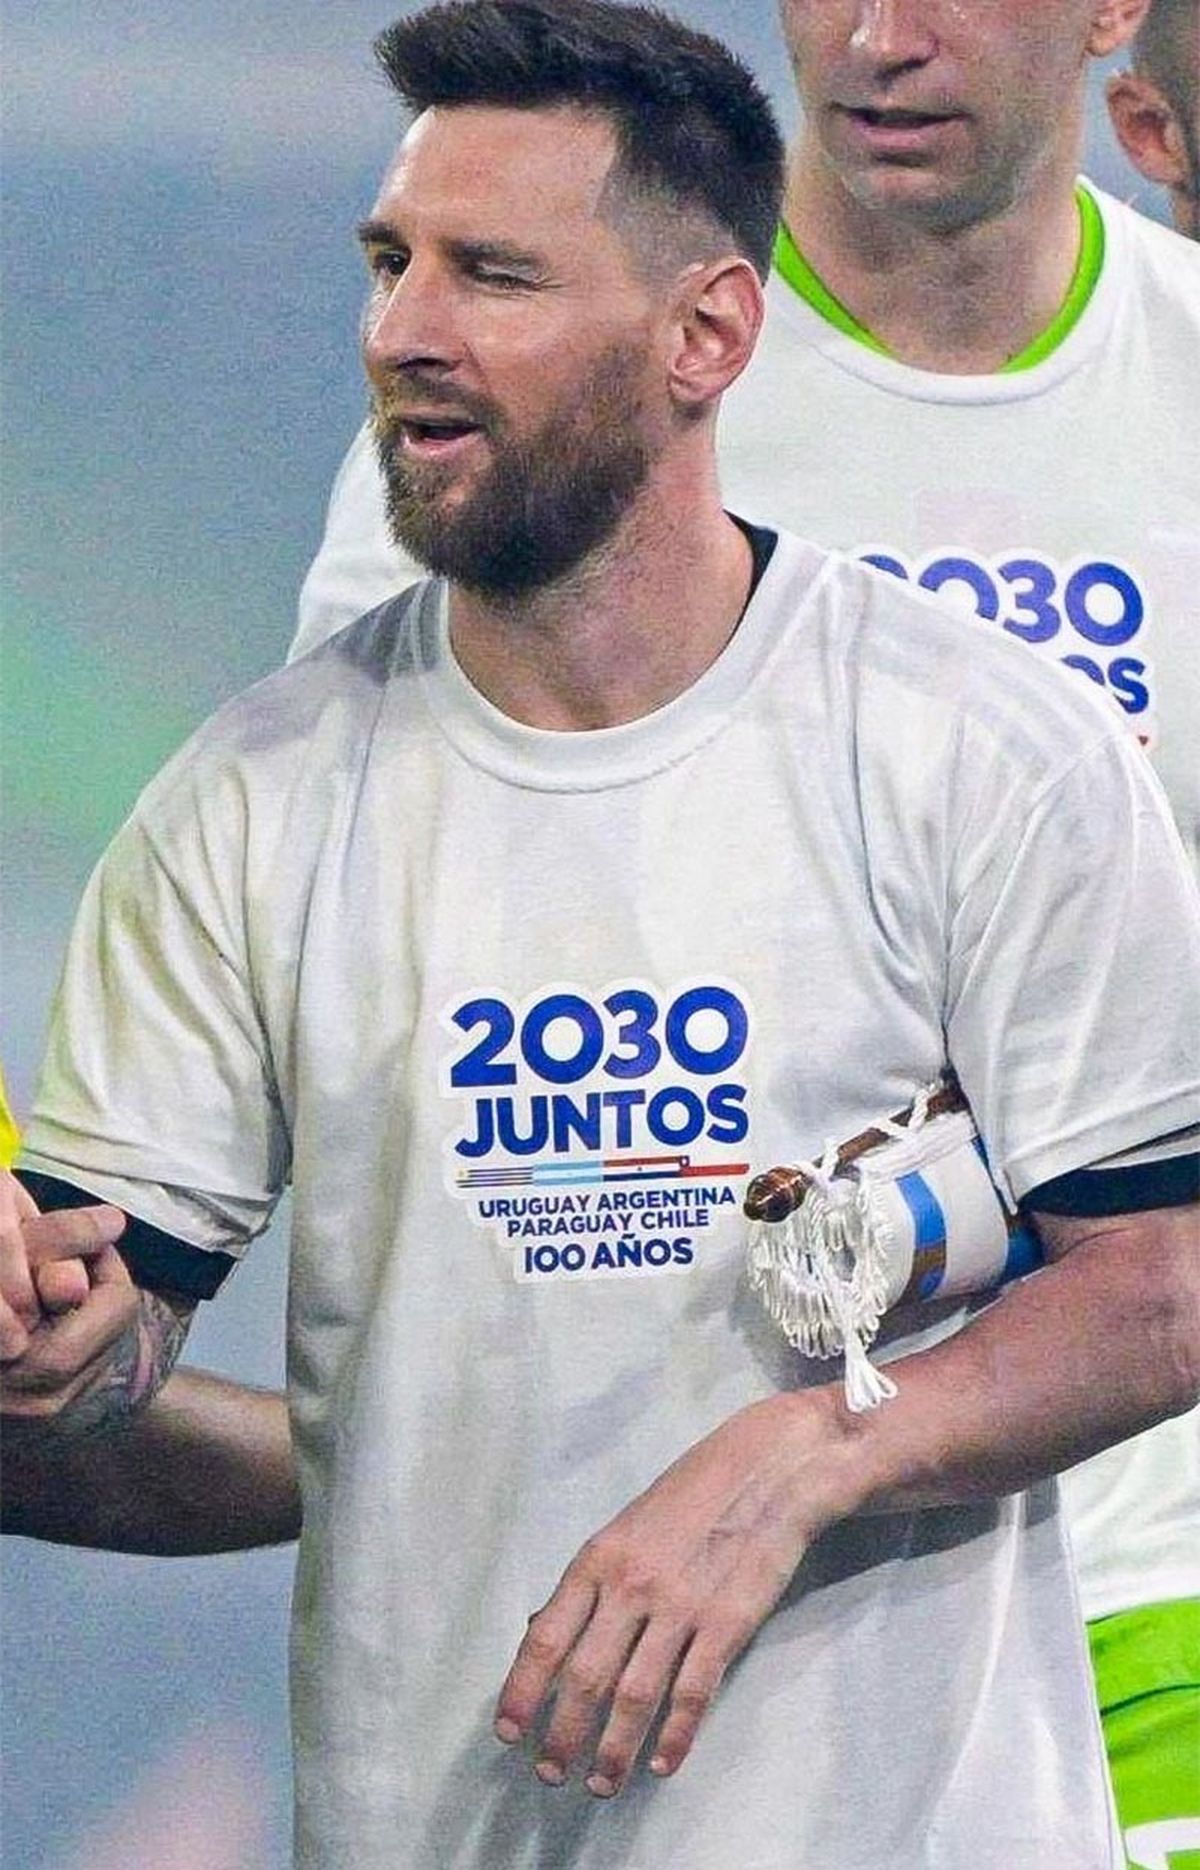 ¿Qué significa el 2030 en la camiseta de Argentina?